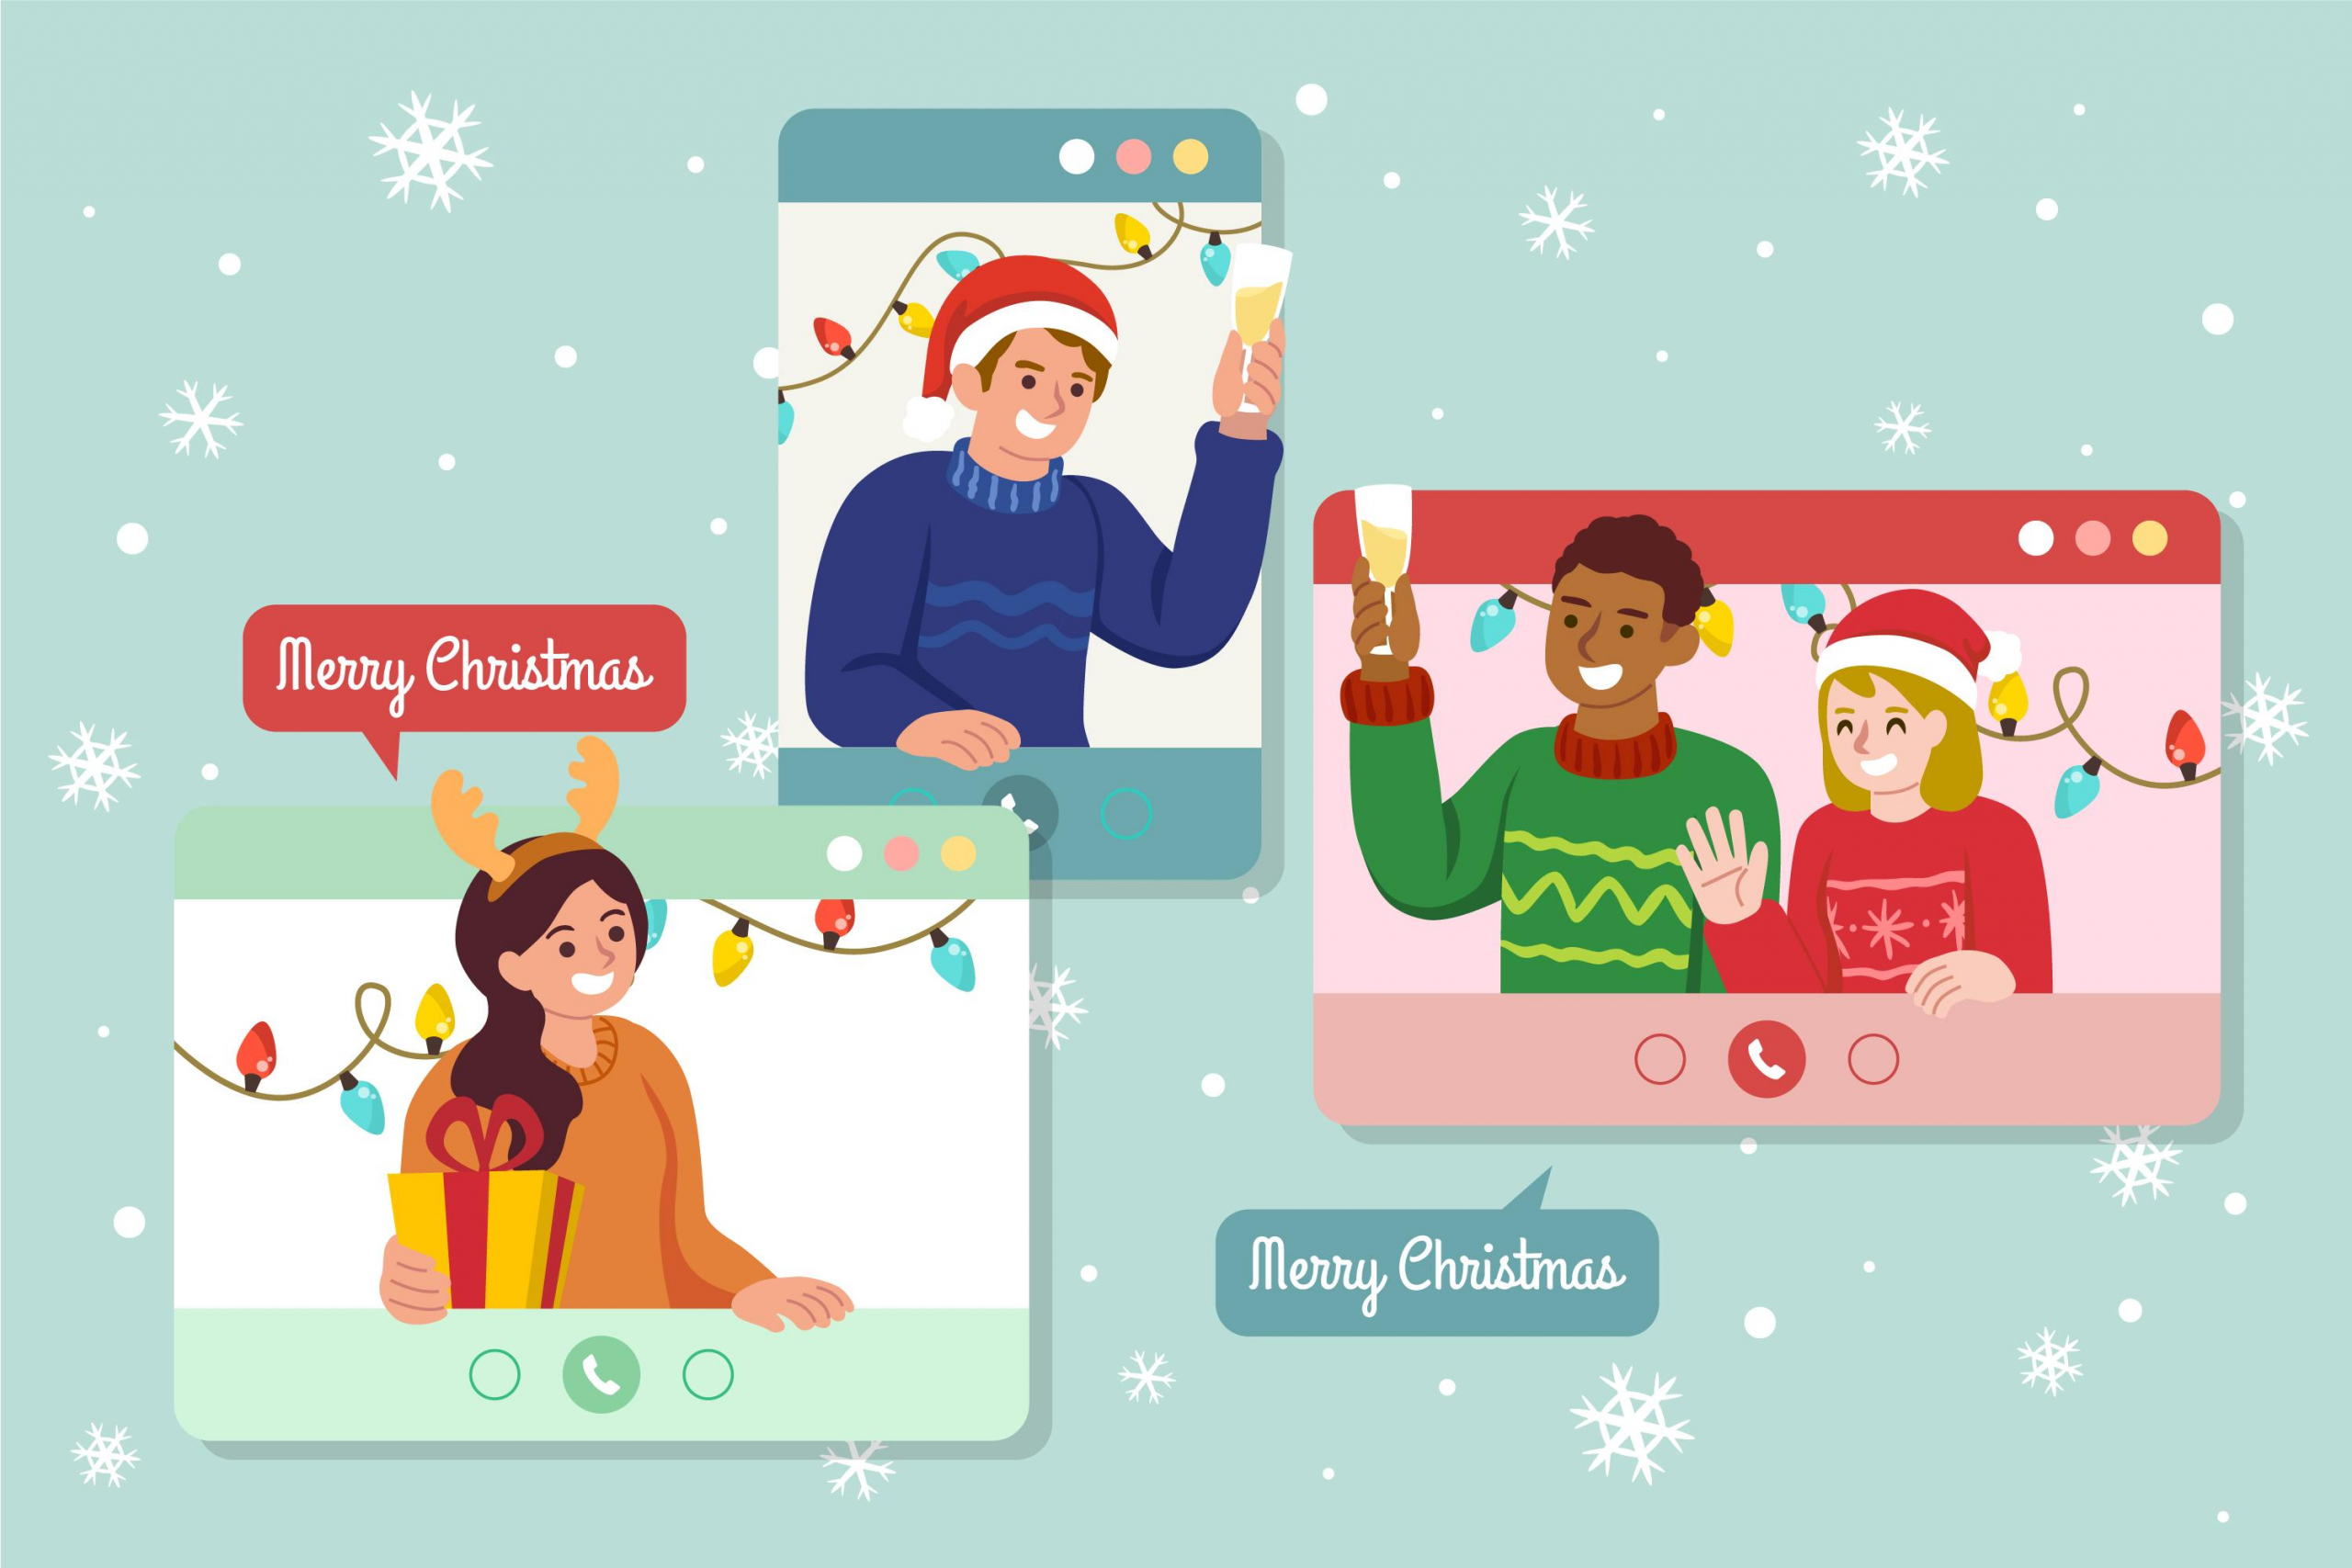 fun-Virtual-Christmas-Party-Ideas